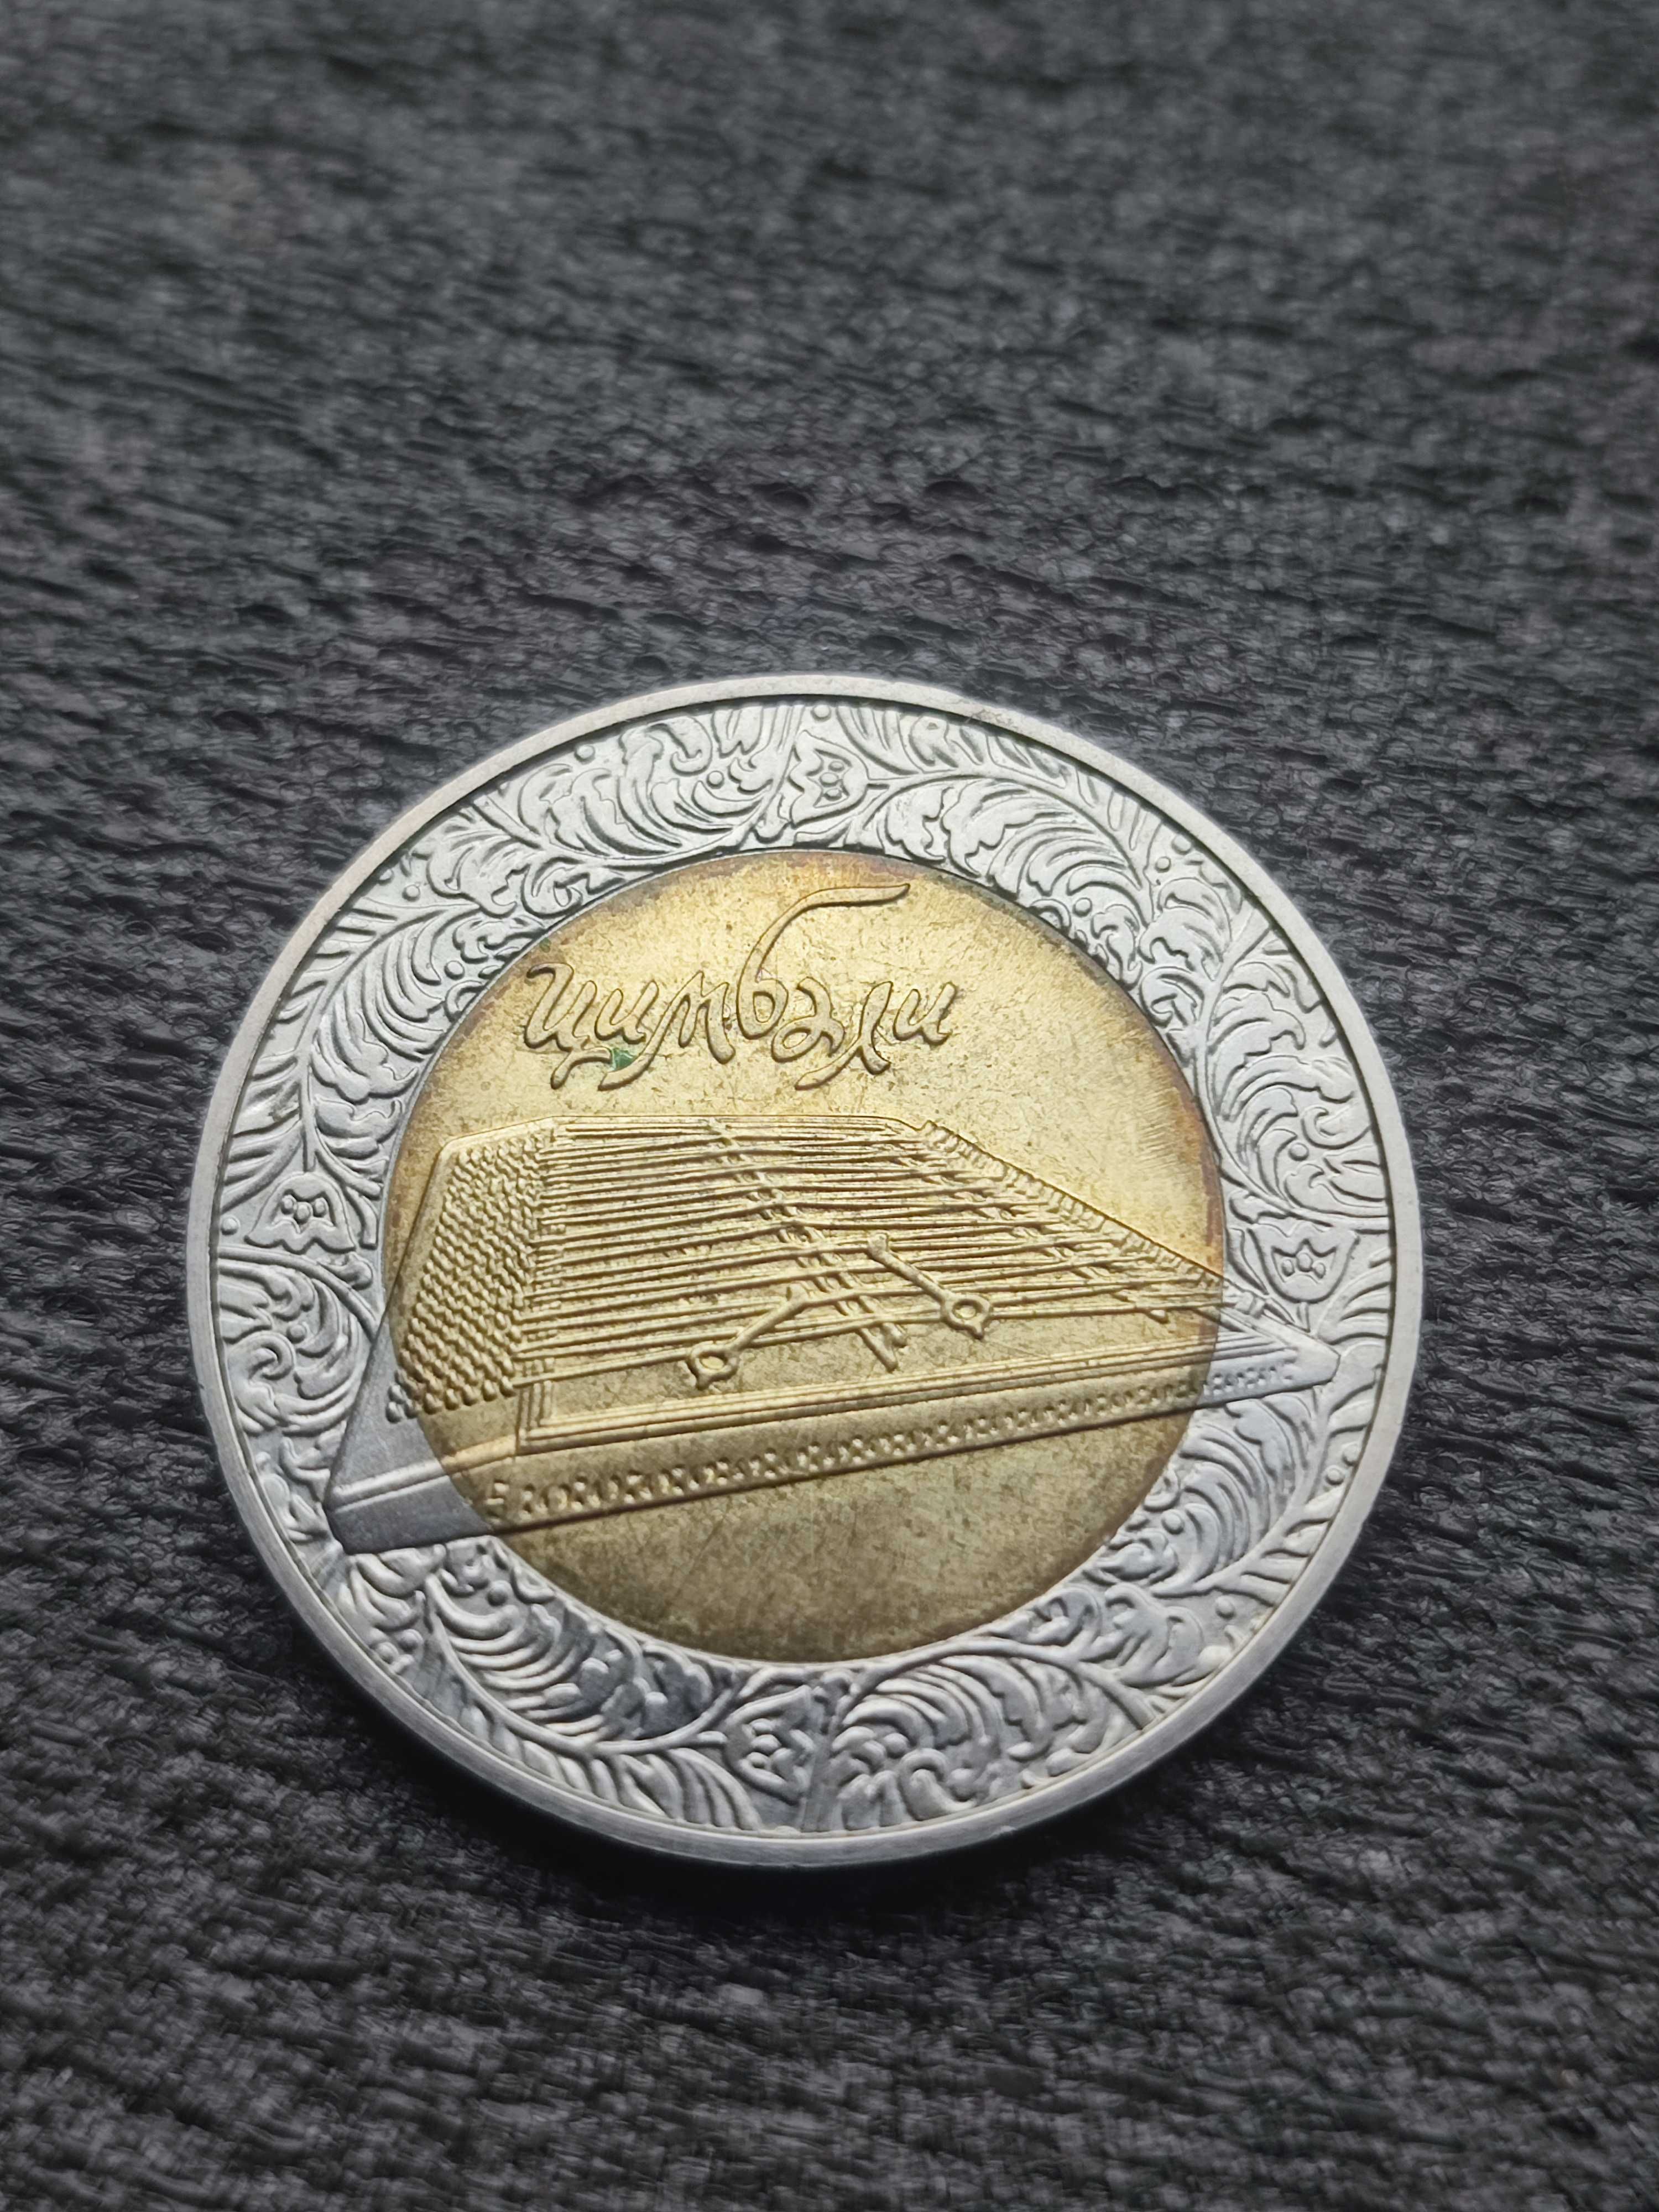 5 гривен, 2006 - Цимбали